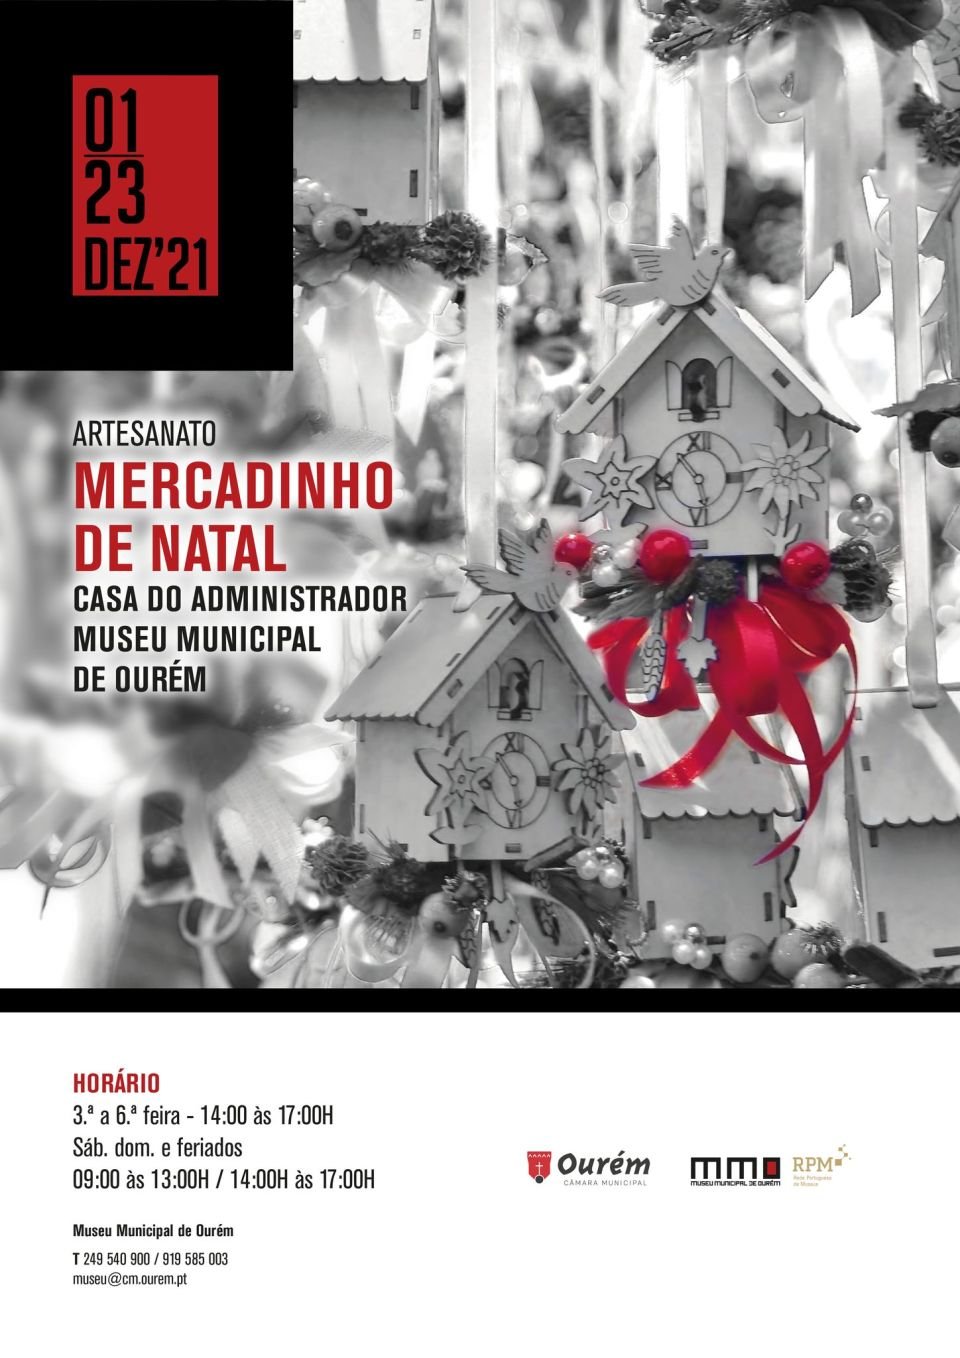 MERCADINHO DE NATAL NO MUSEU